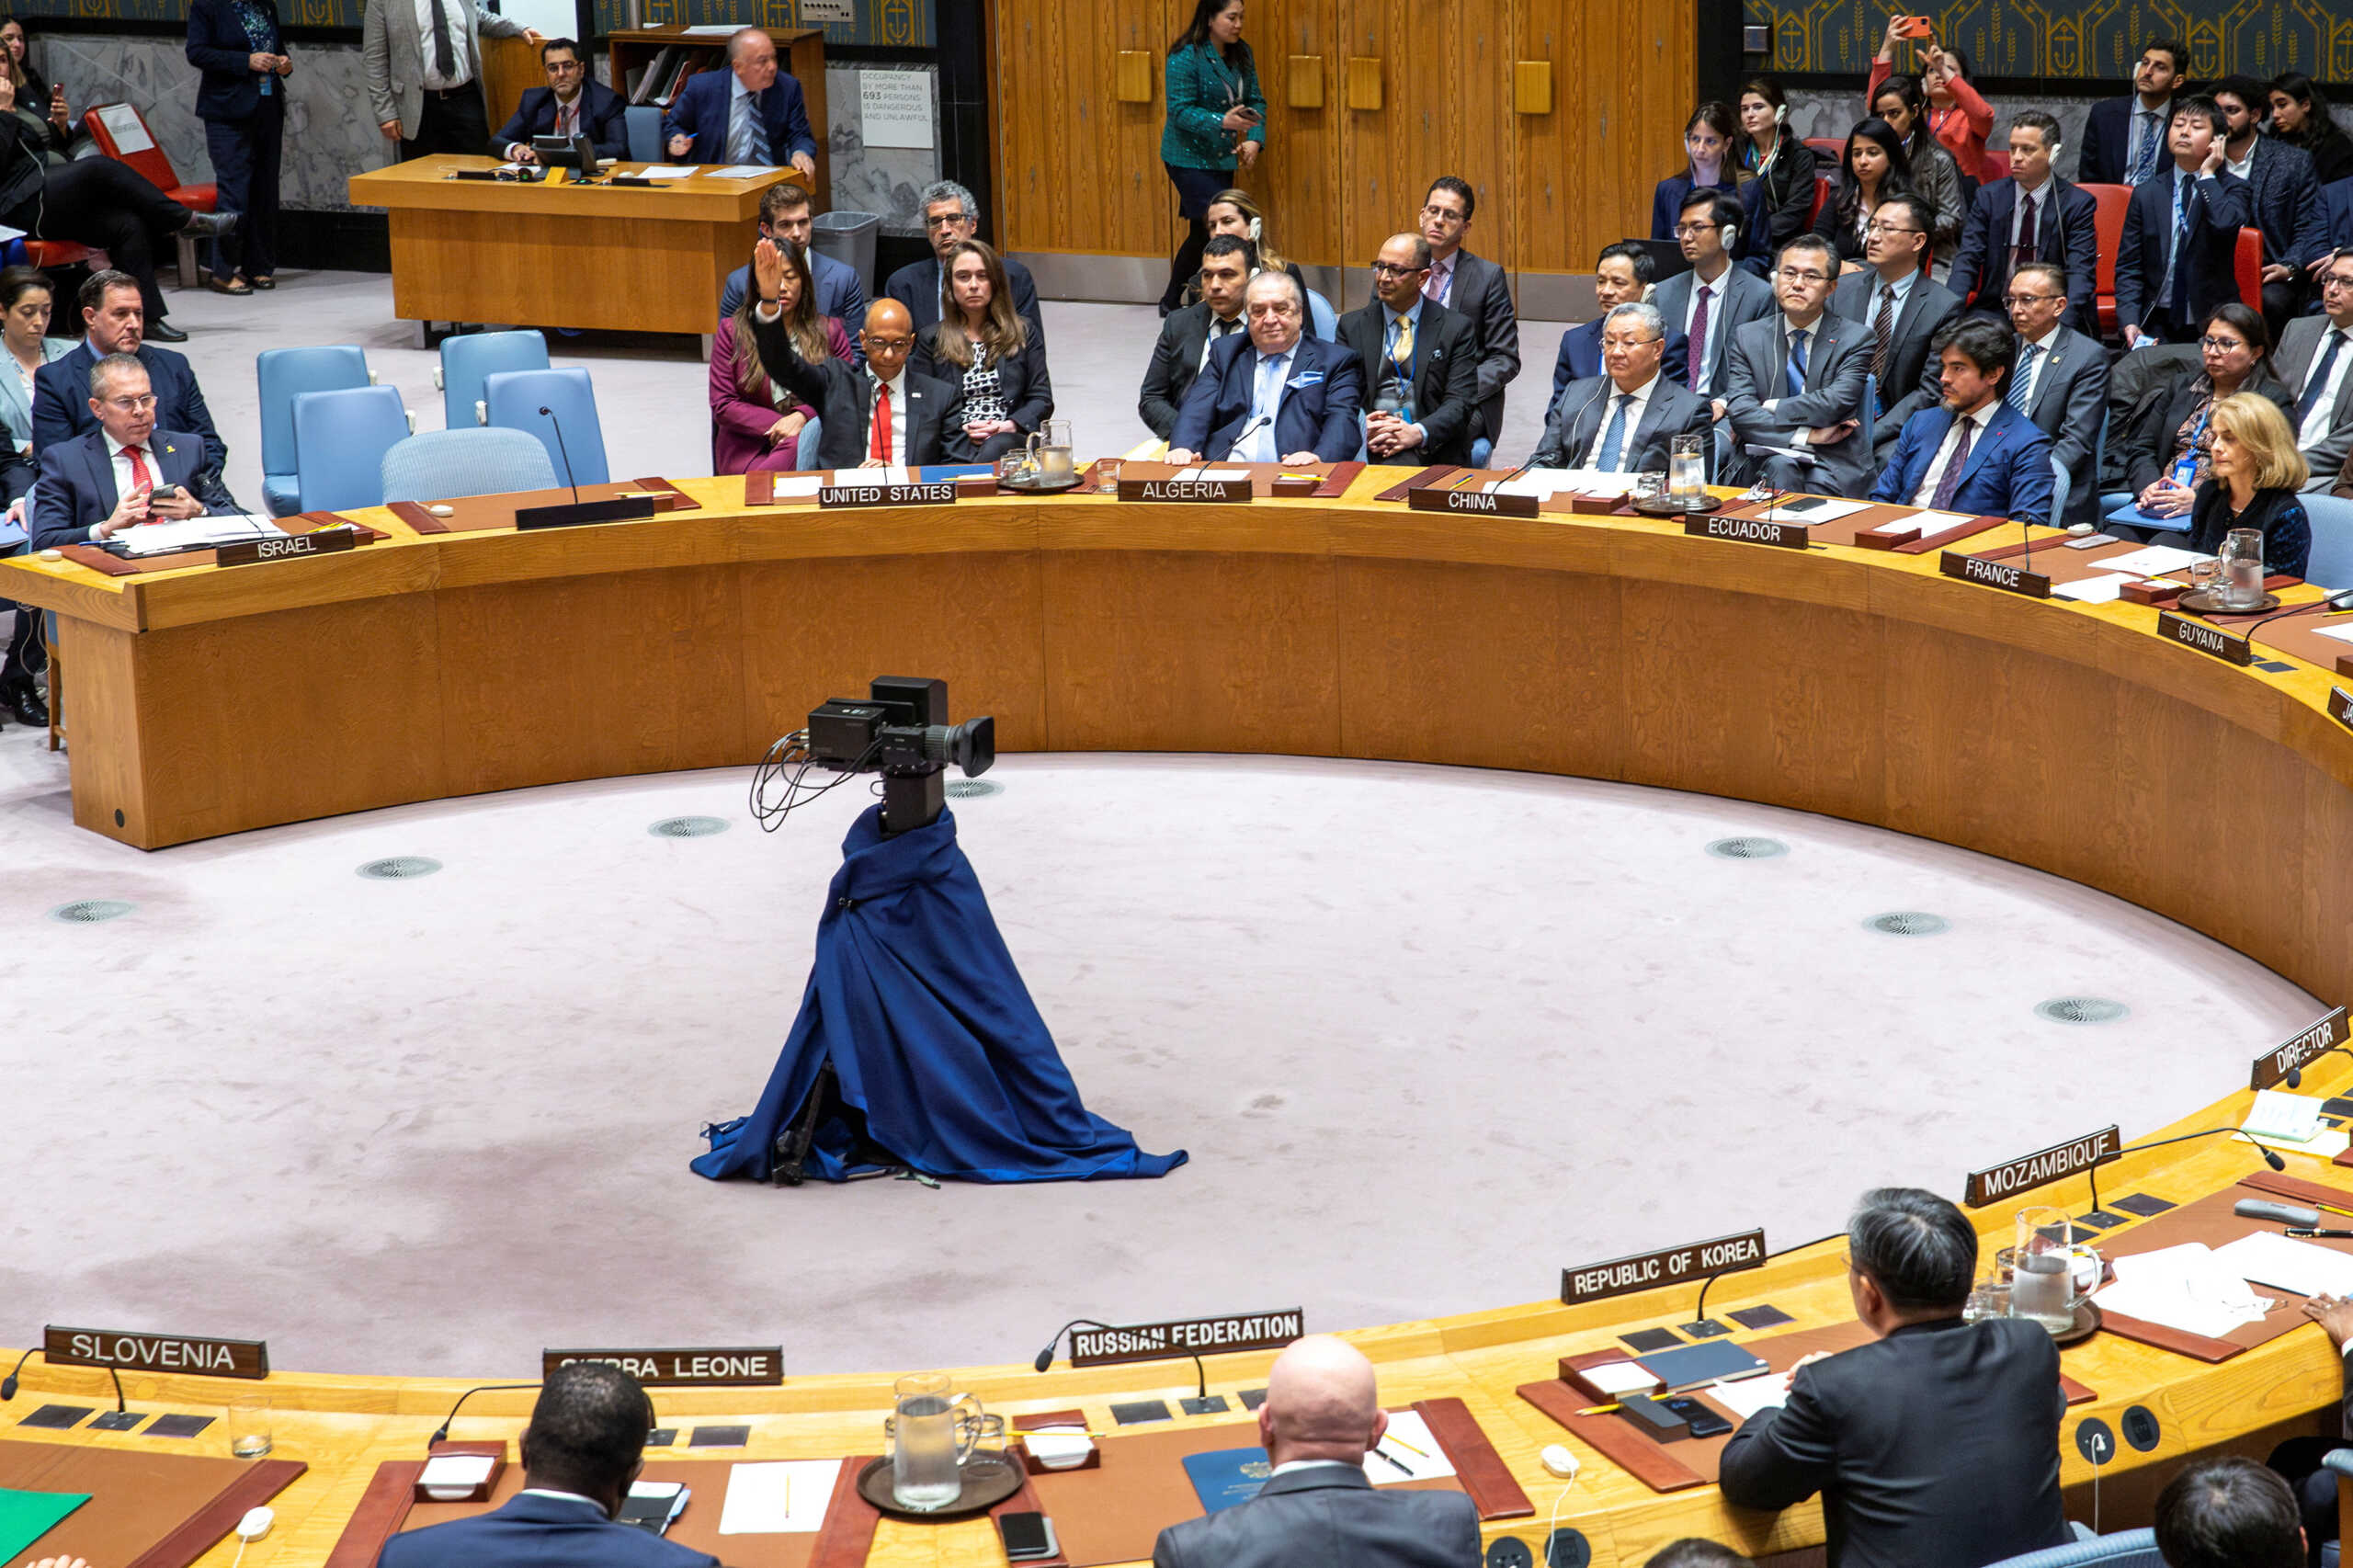 ΟΗΕ: Η ένταξη της Παλαιστίνης θα διορθώσει μια αδικία λέει η Κίνα